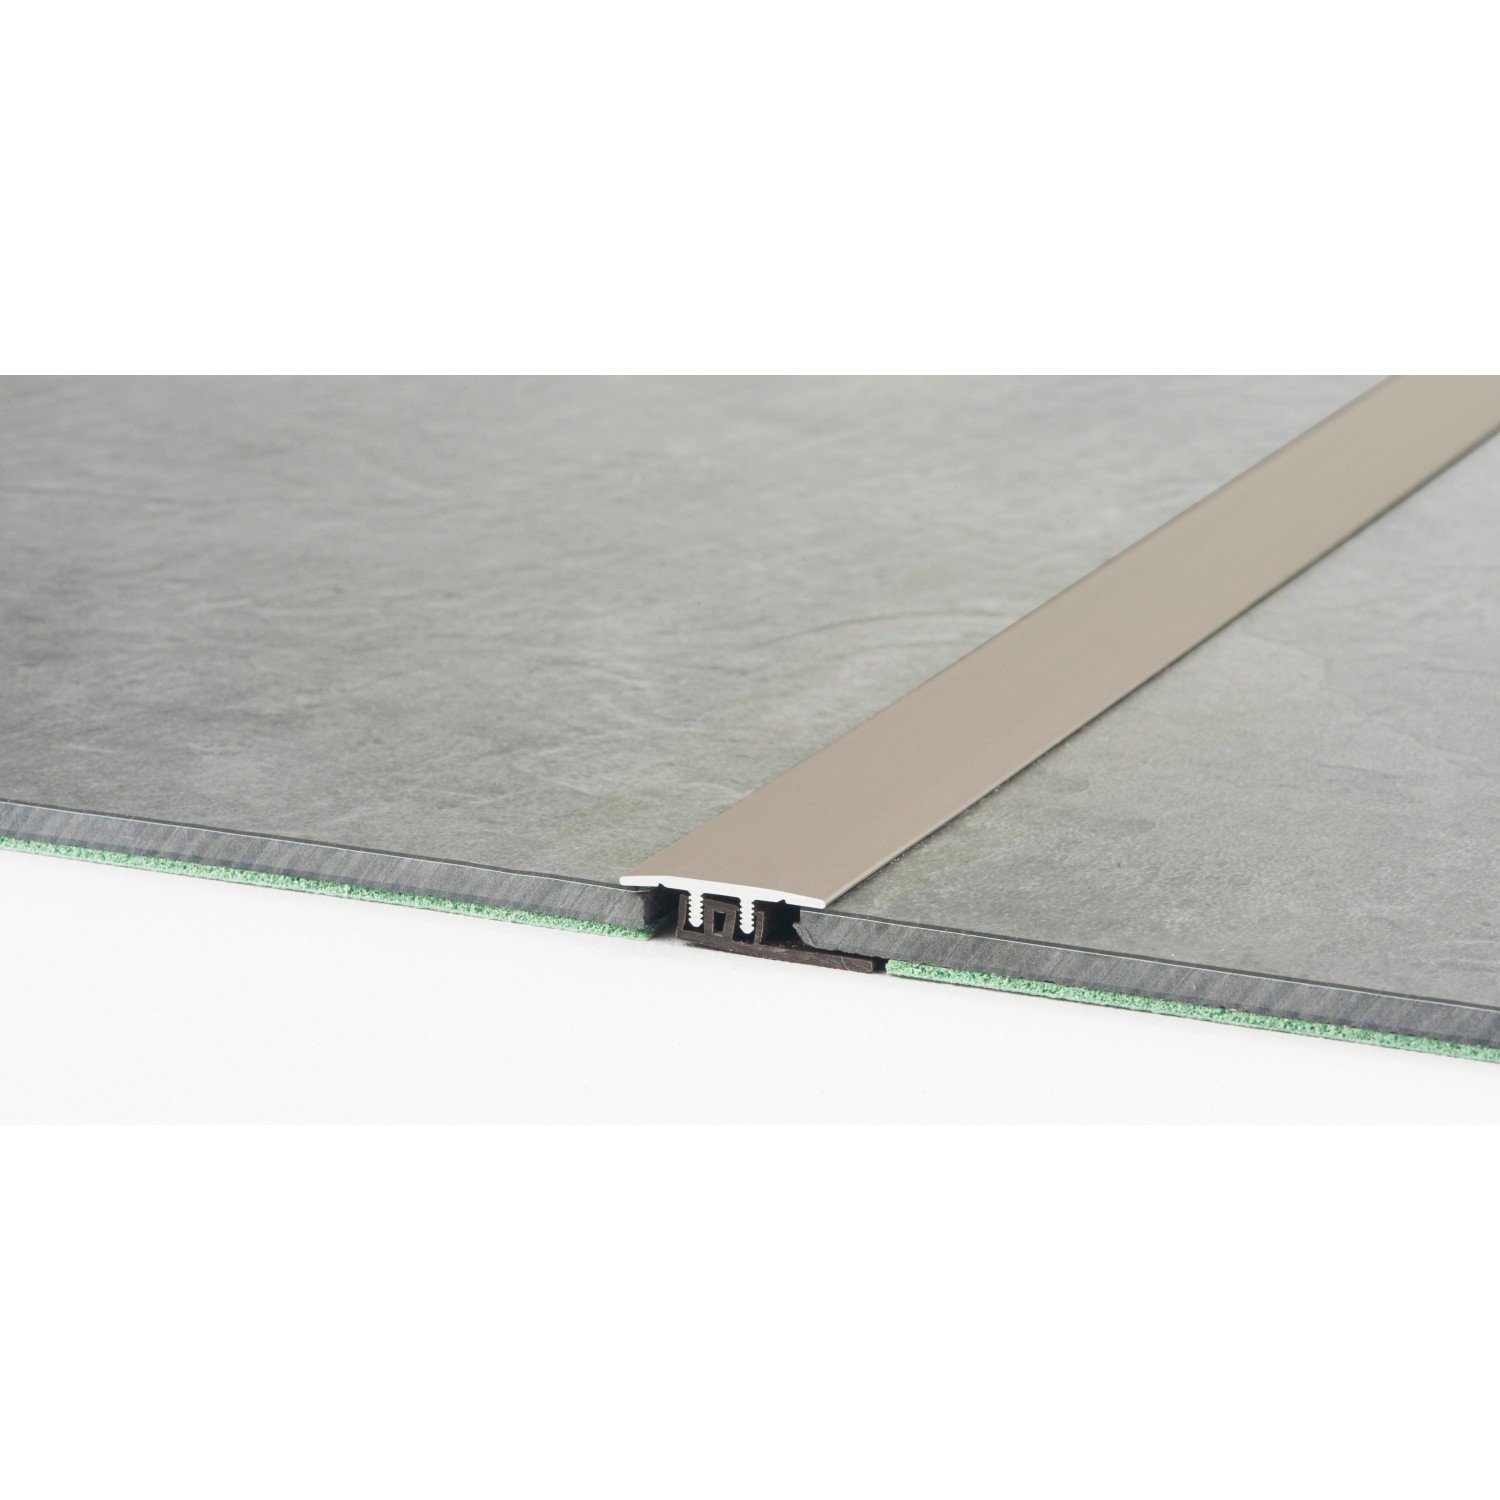 Übergangsprofil für Vinylböden Edelstahl 7,5 mm x 34 mm x 2700 mm von Floorever Spa